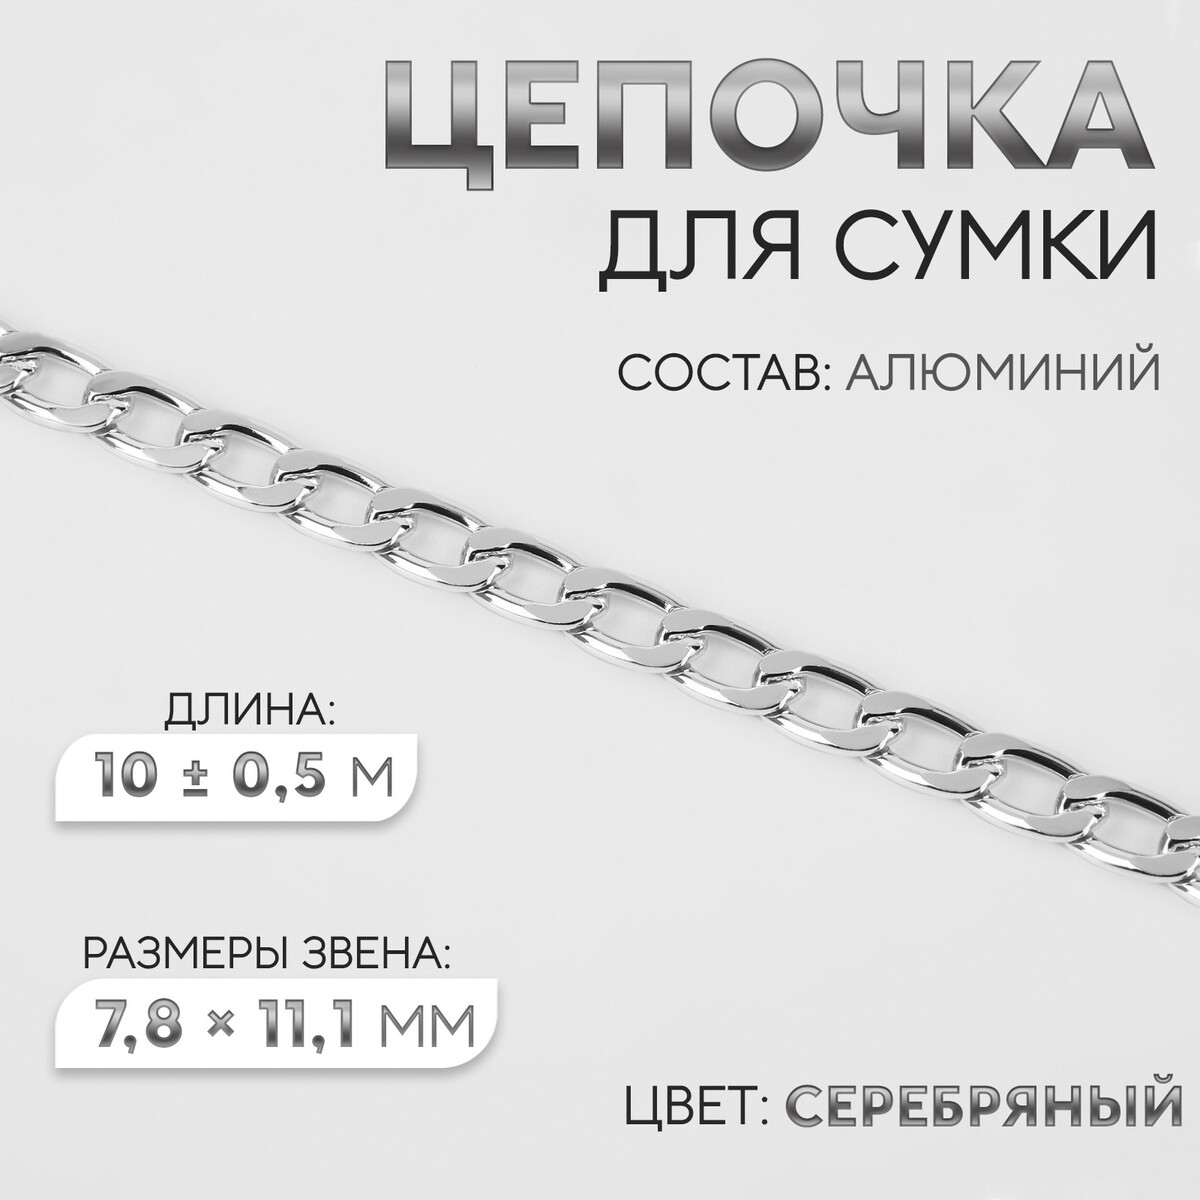 Цепочка для сумки, плоская, алюминиевая, 7,8 × 11,1 мм, 10 ± 0,5 м, цвет серебряный цепочка для сумки плоская алюминиевая 7 8 × 11 1 мм 10 ± 0 5 м серебряный